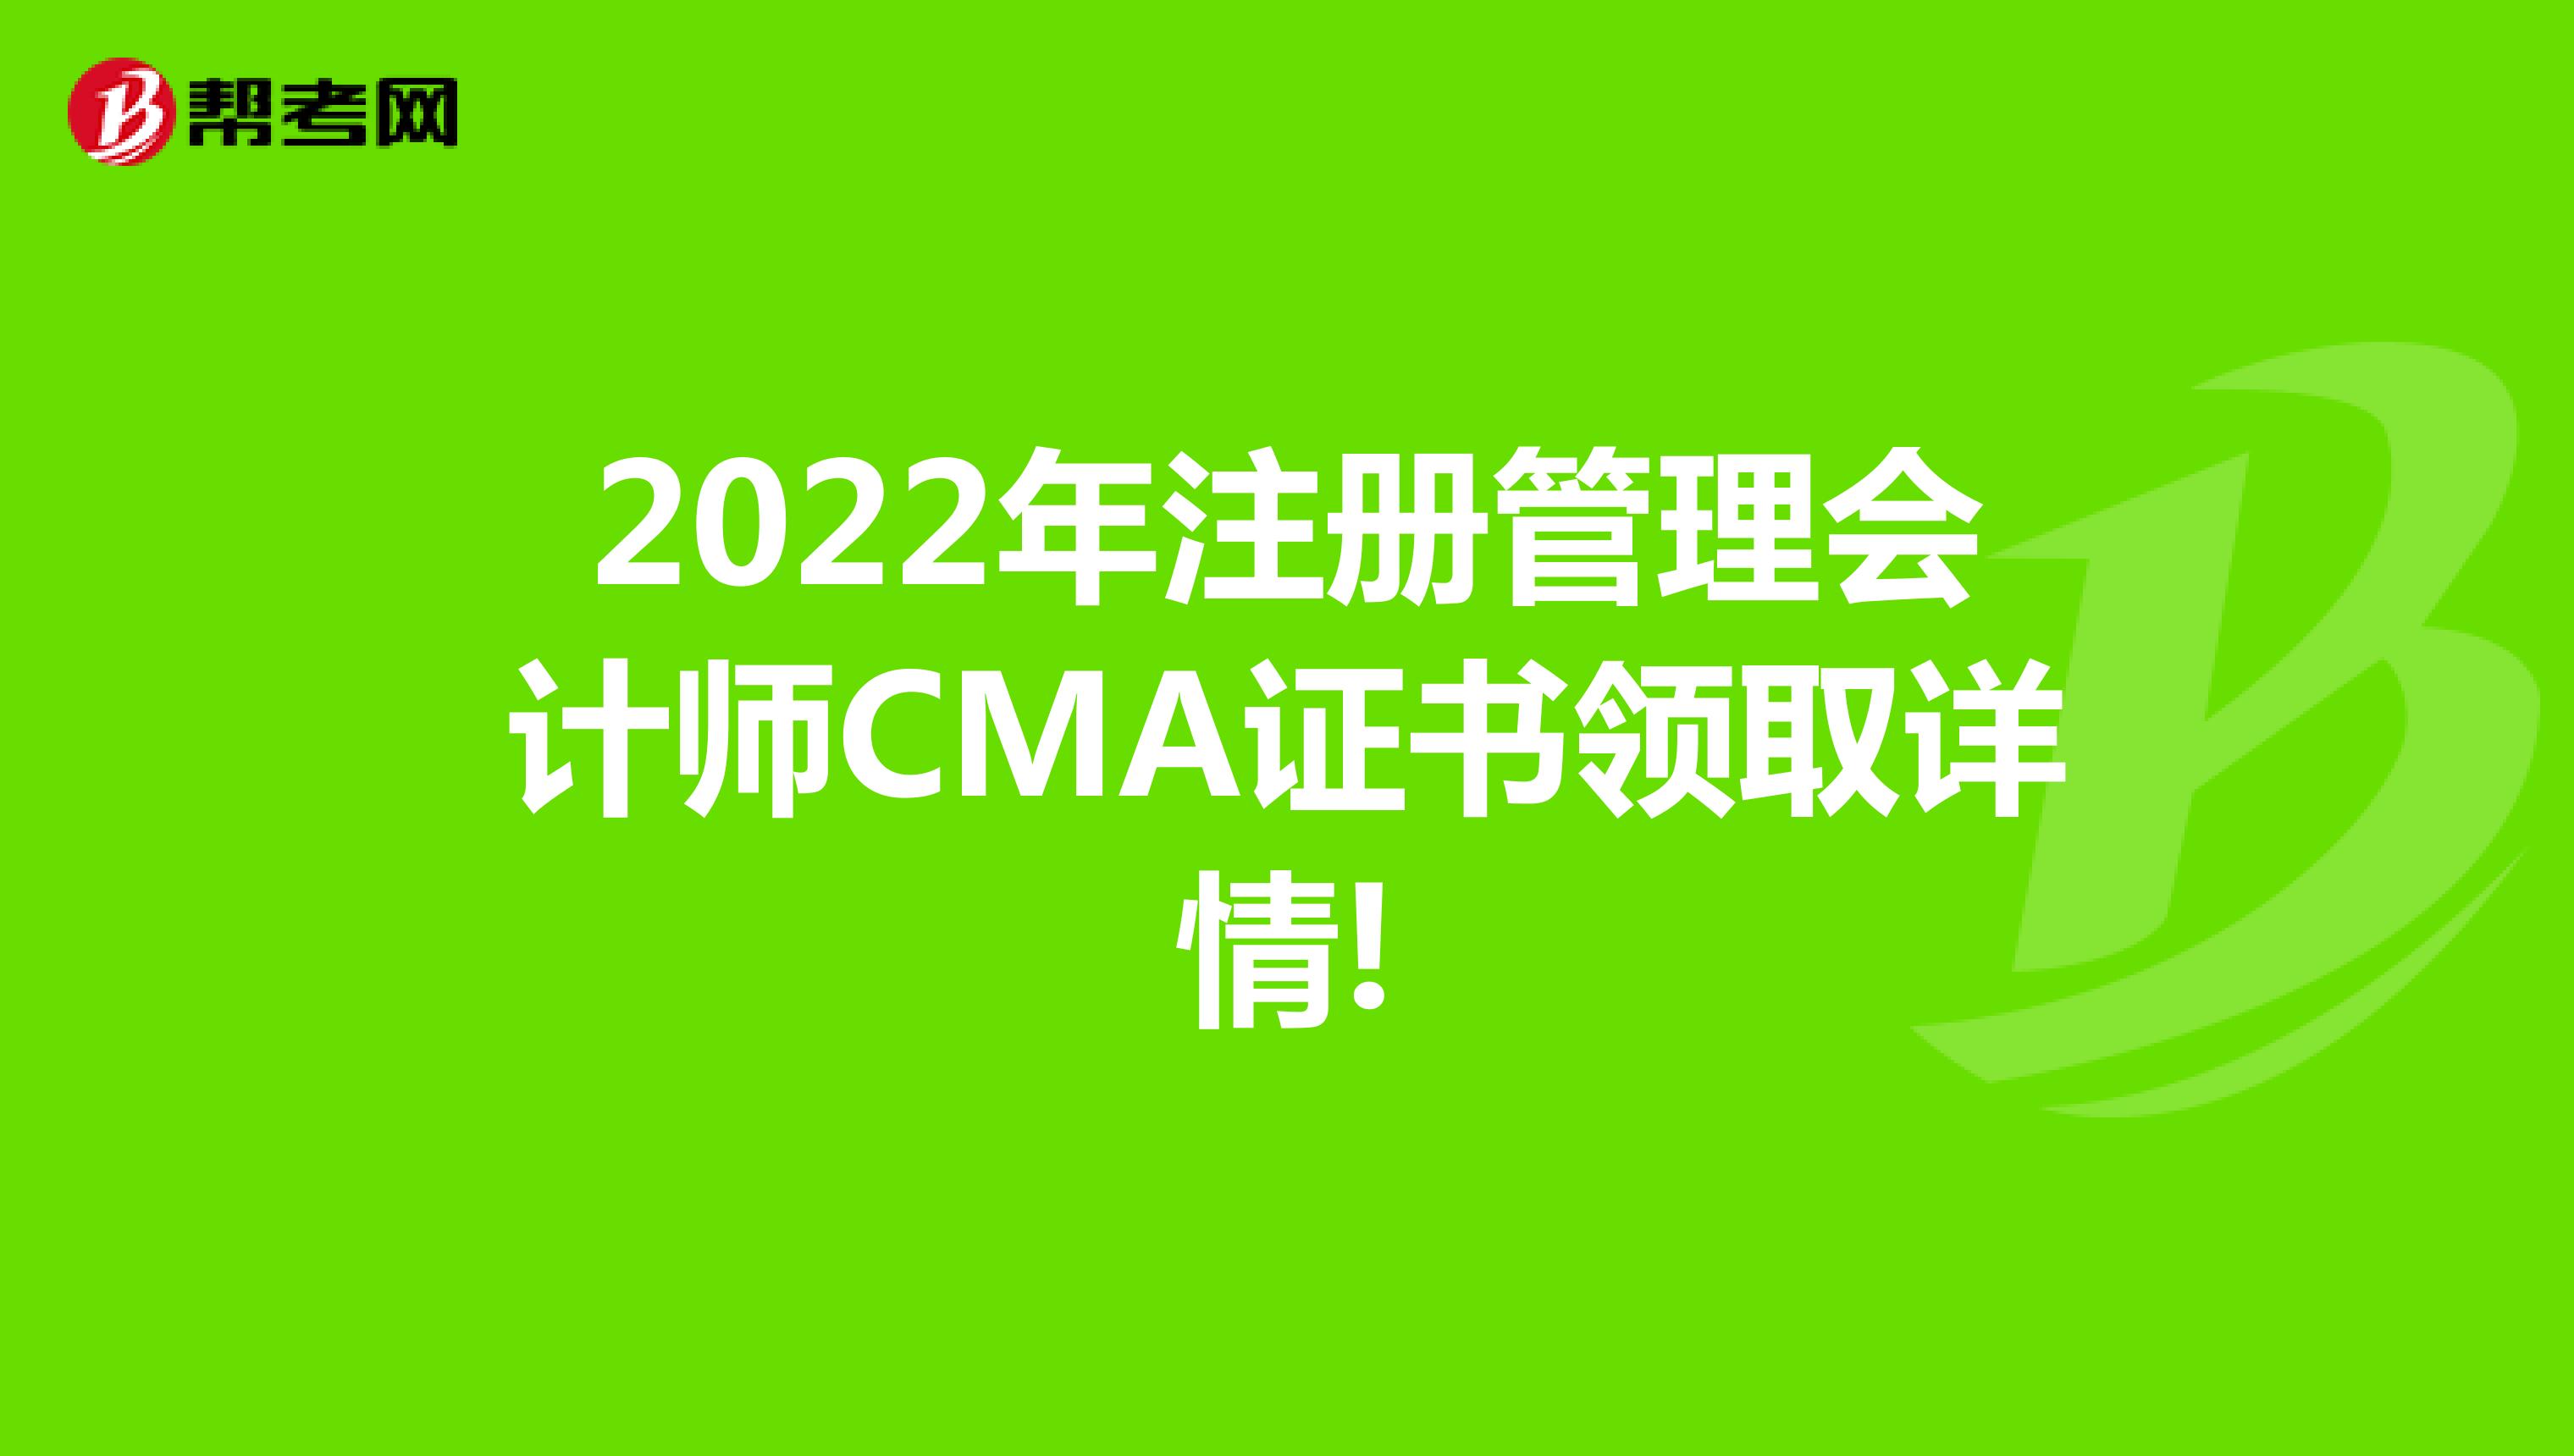 2022年注册管理会计师CMA证书领取详情!